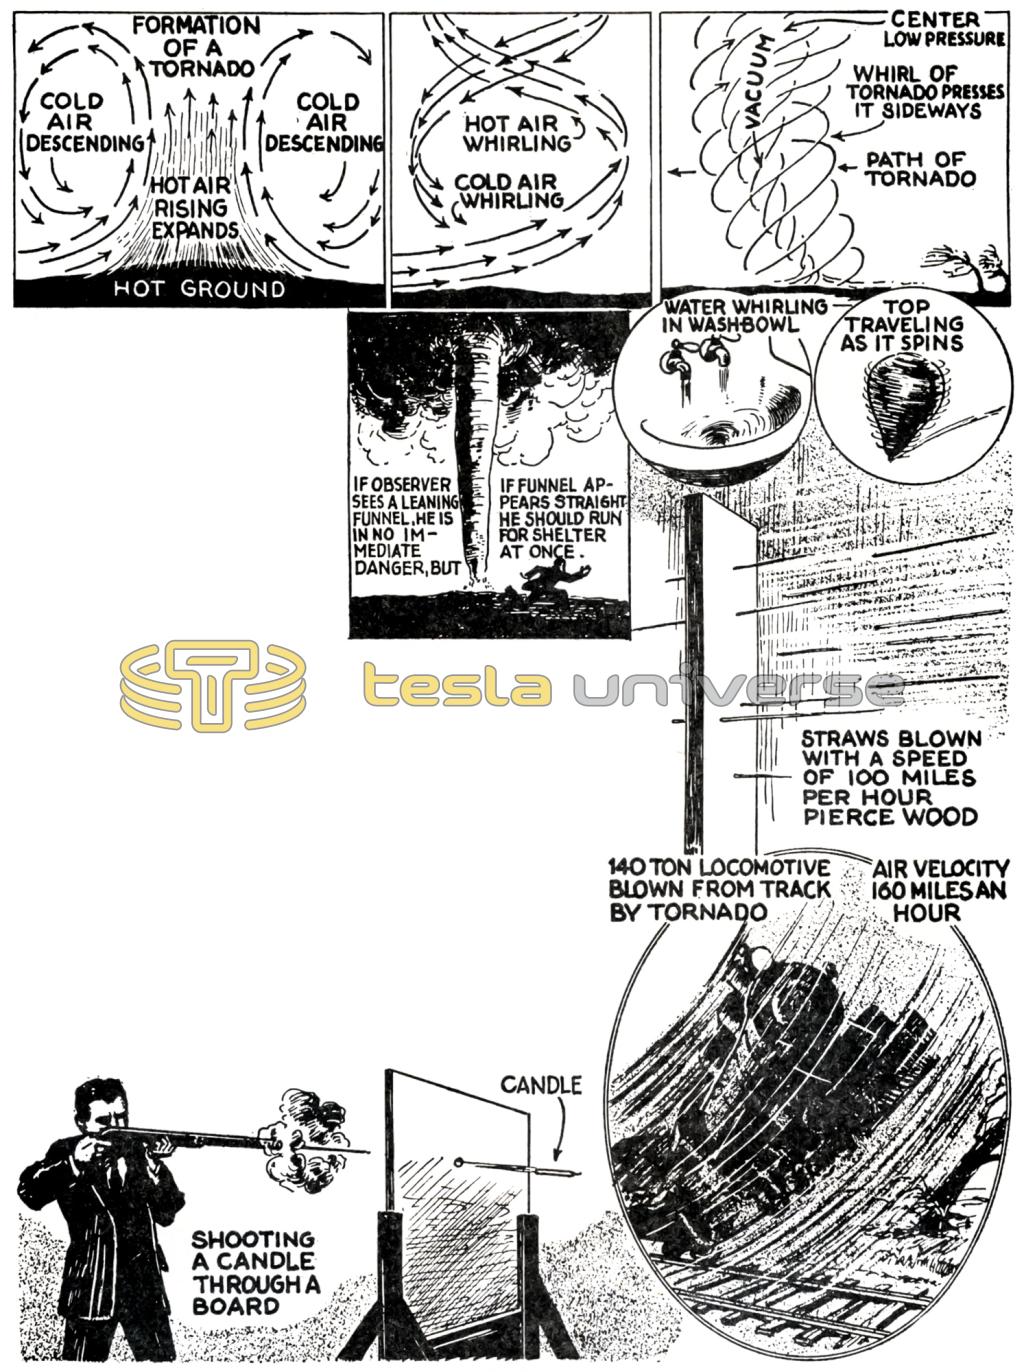 Nikola Tesla diagram of the formation of a tornado